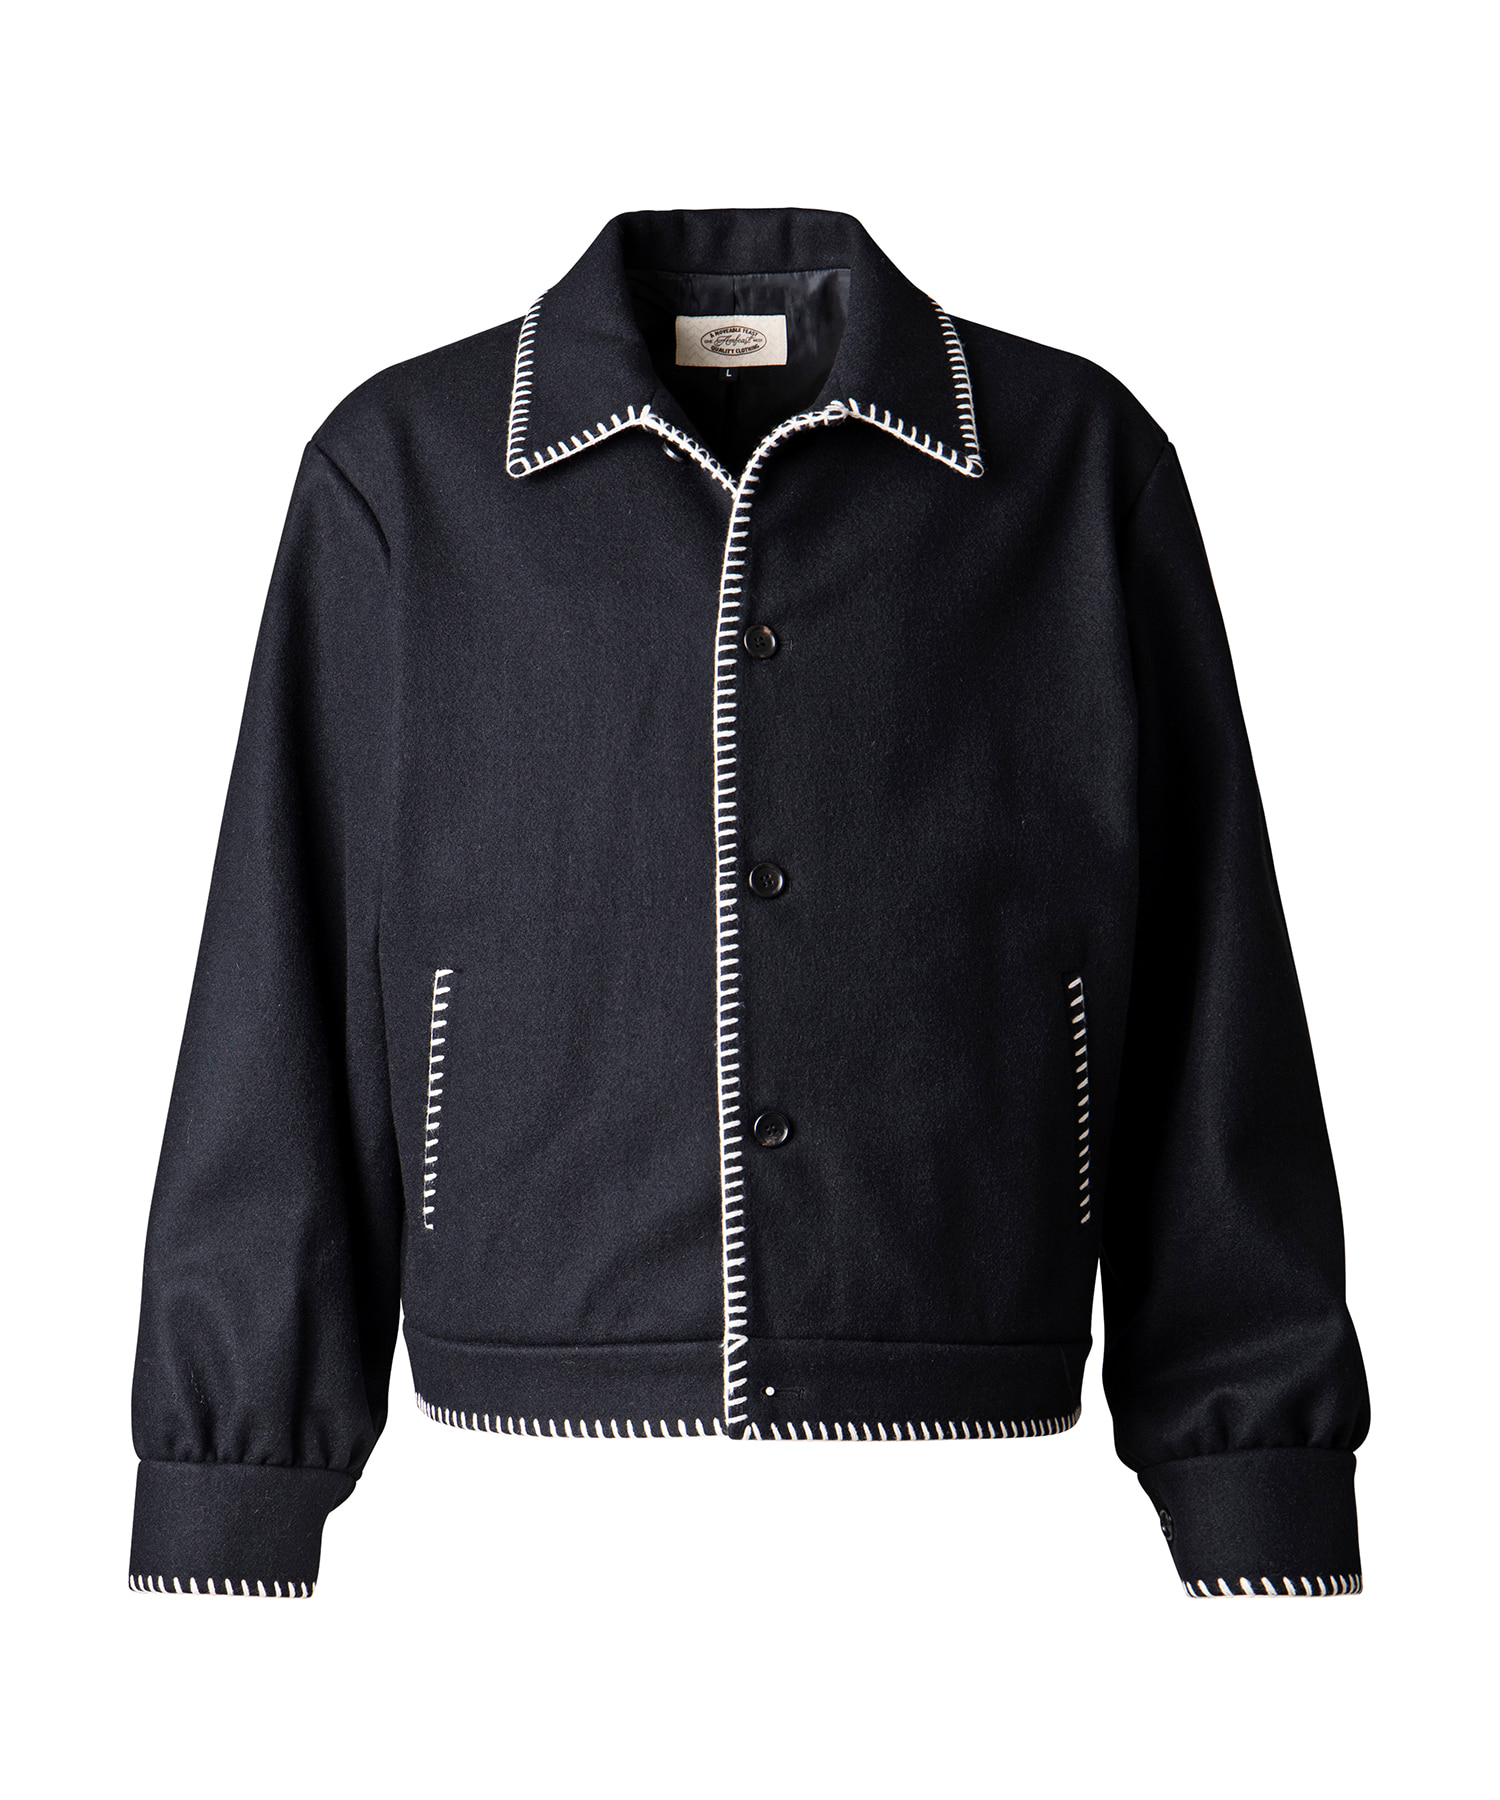 Western wool jacket BlackAMFEAST(암피스트)